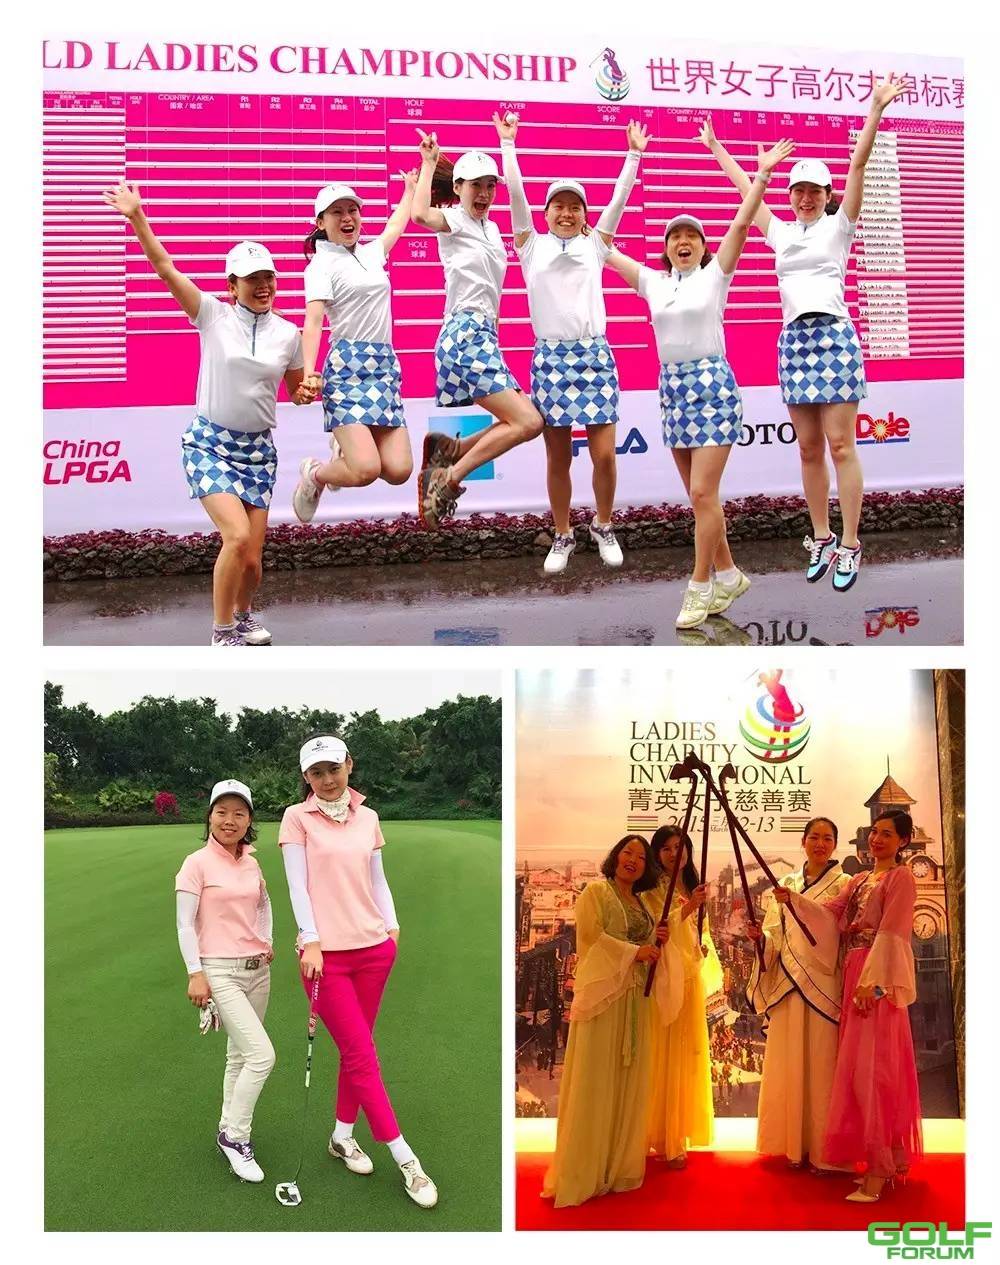 中国最美女子高尔夫球队评选快为你心中的美投上一票 ...